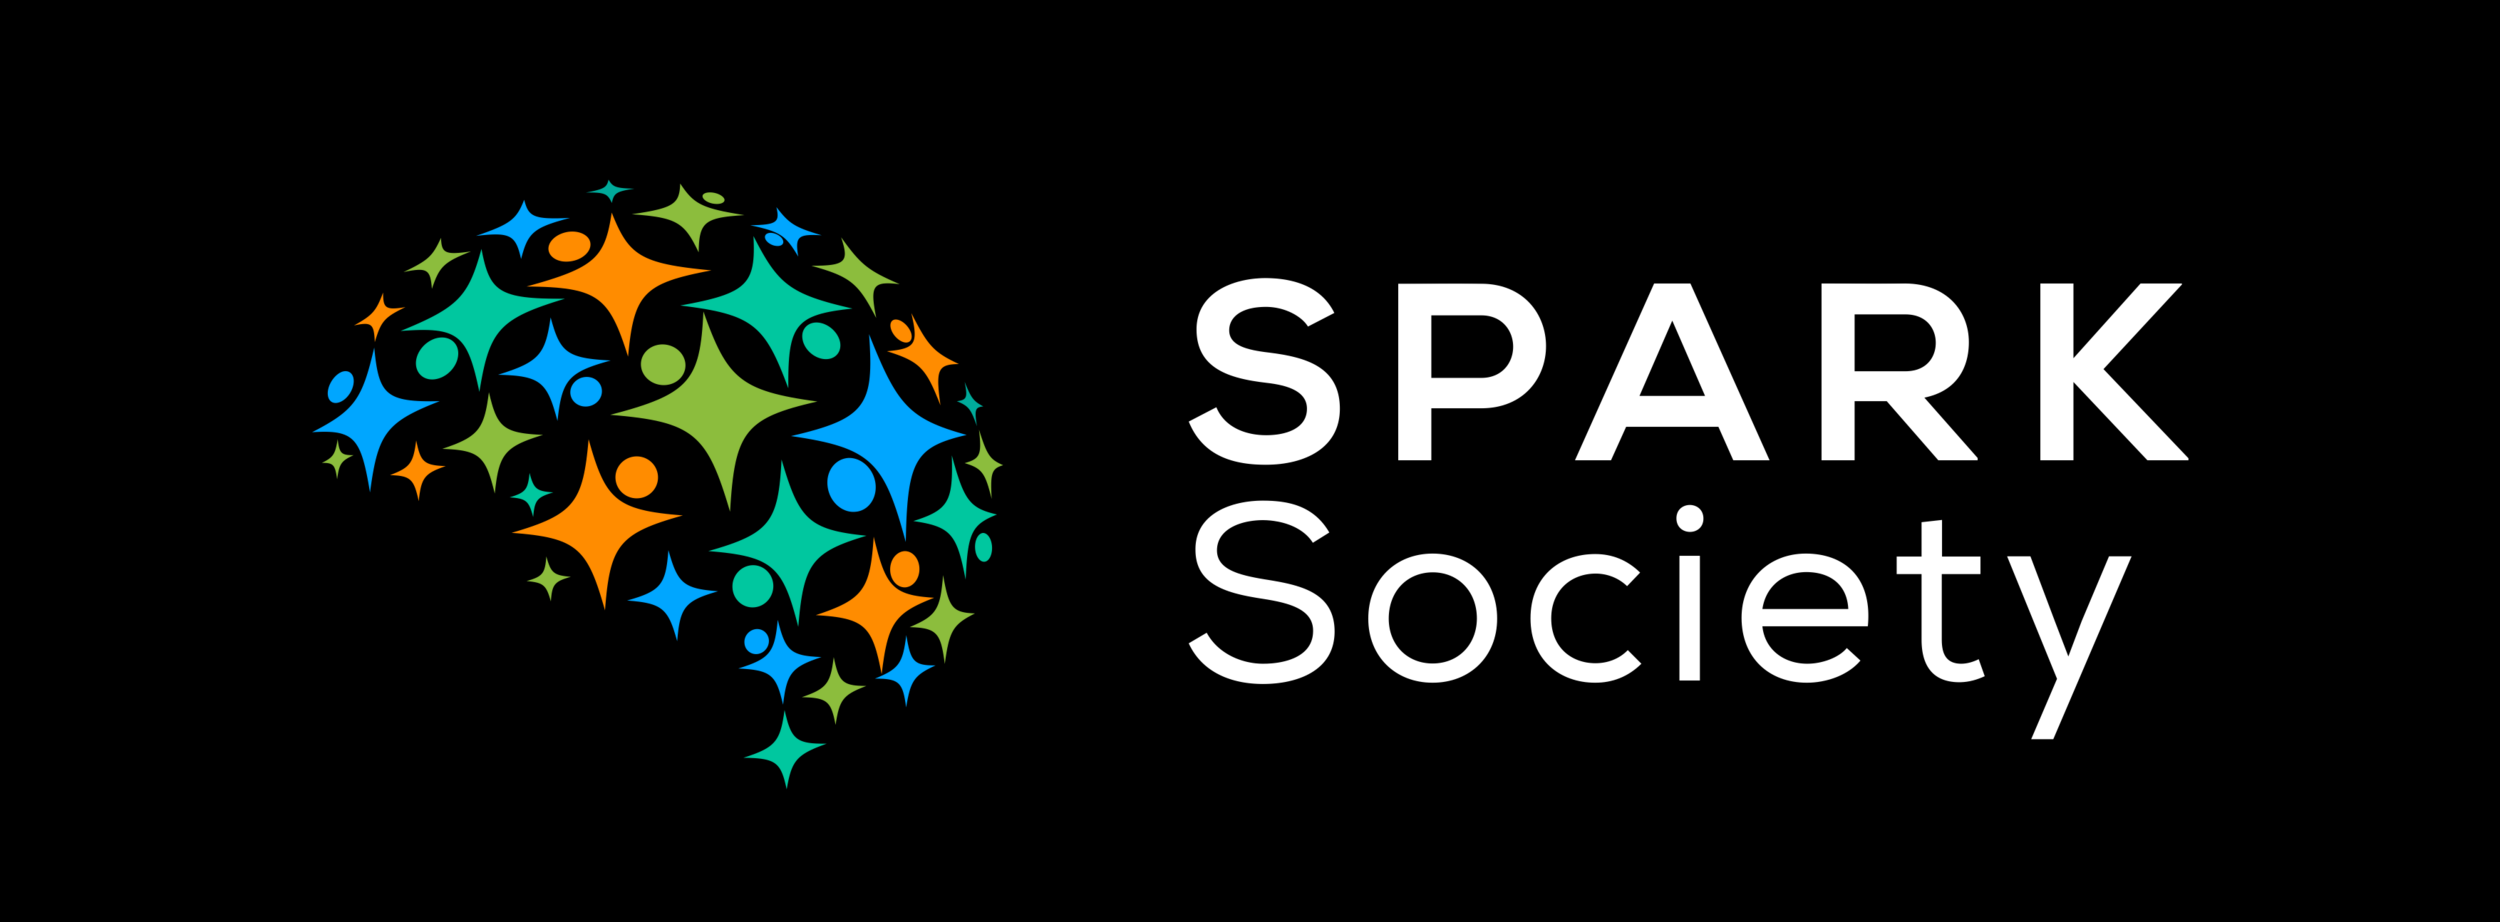 SPARK Society 